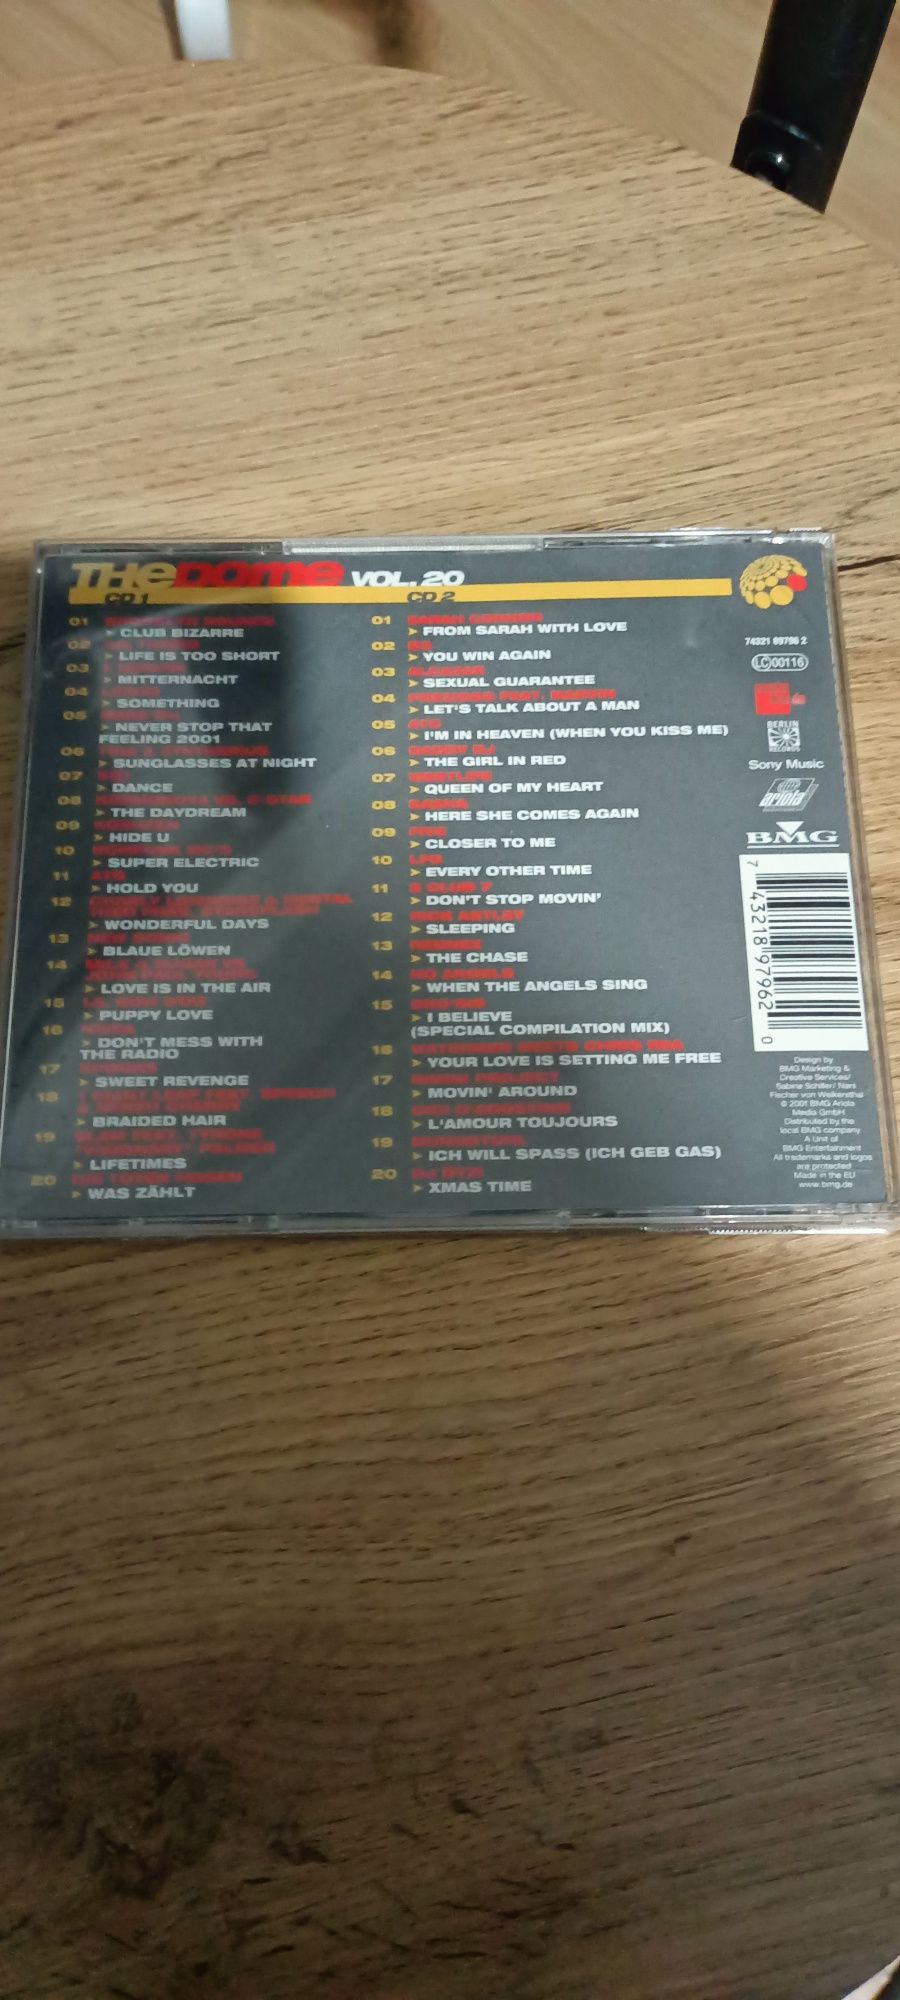 Płyta CD The Dome vol20 z 2001 r